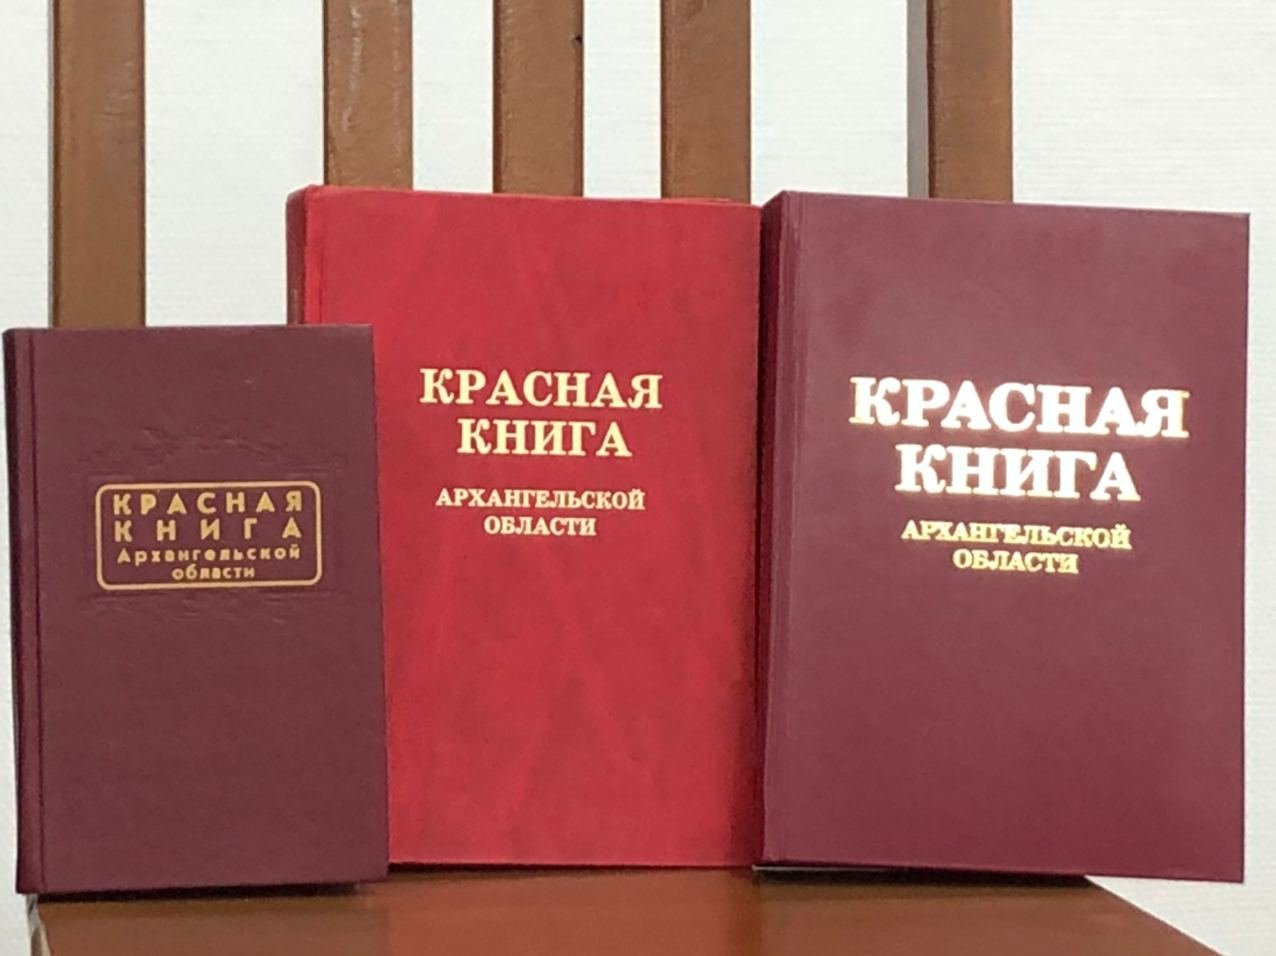 Старая красная книга. Красная книга. Krassnaya kniqa. Красная книга обложка. Виды красных книг.